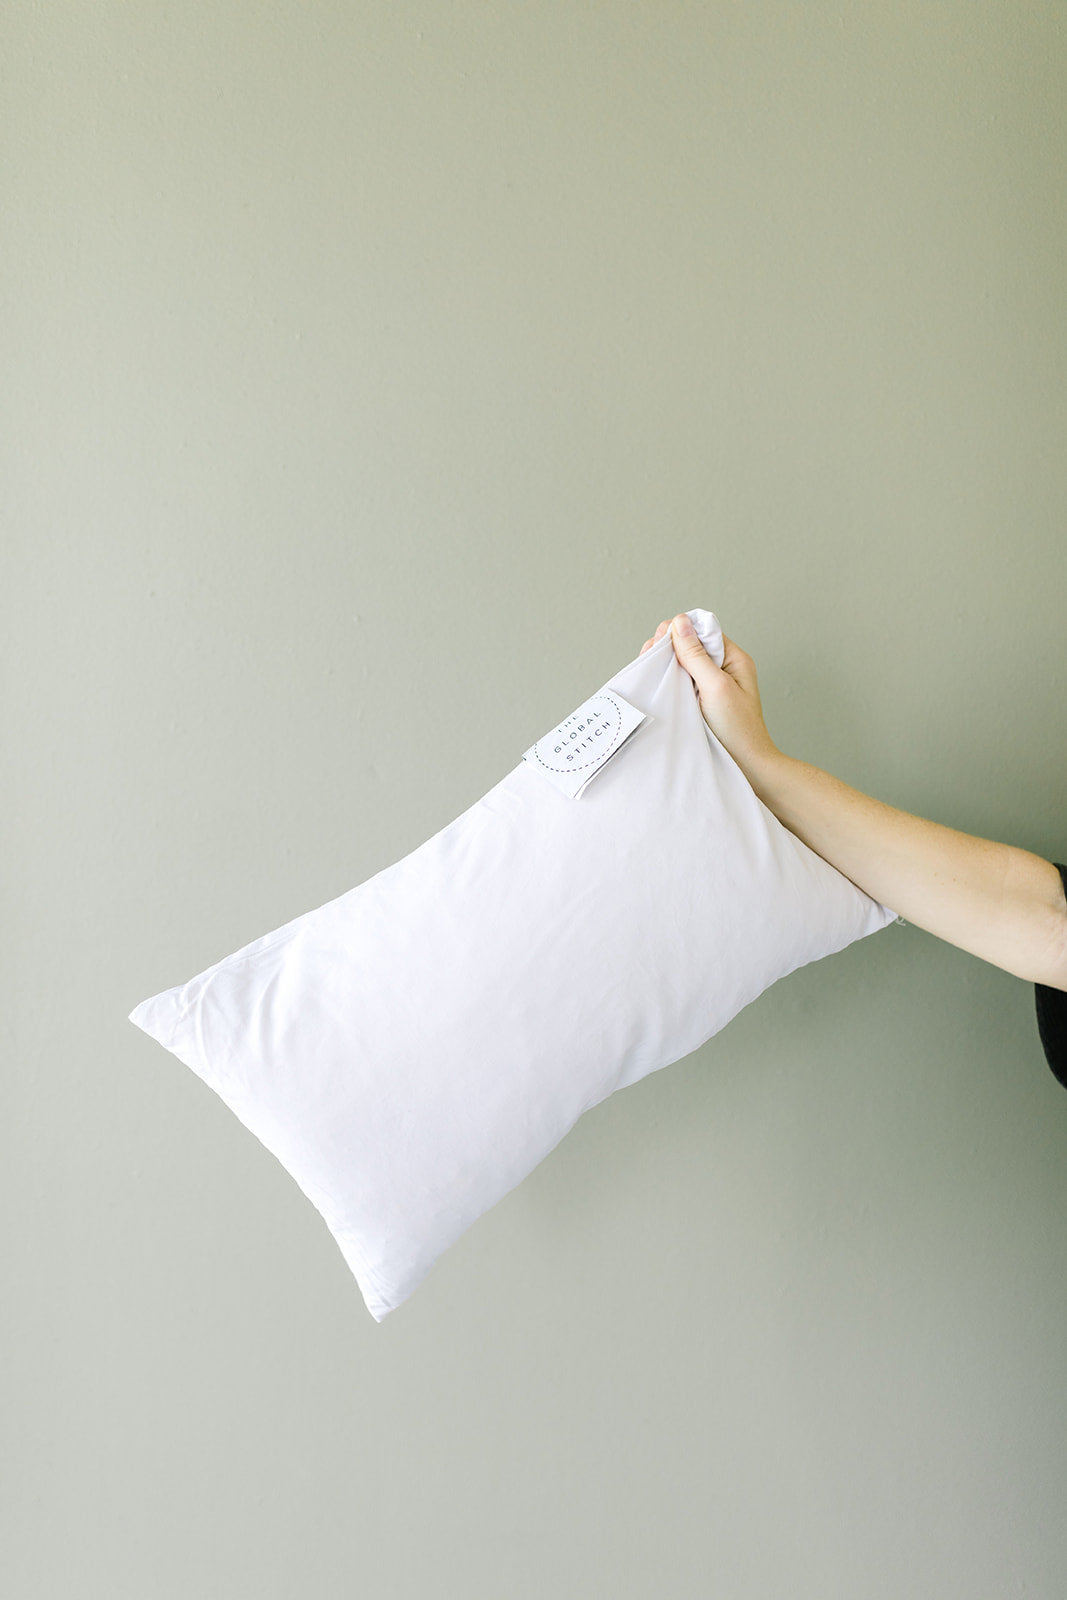 Premium Lumbar Pillow